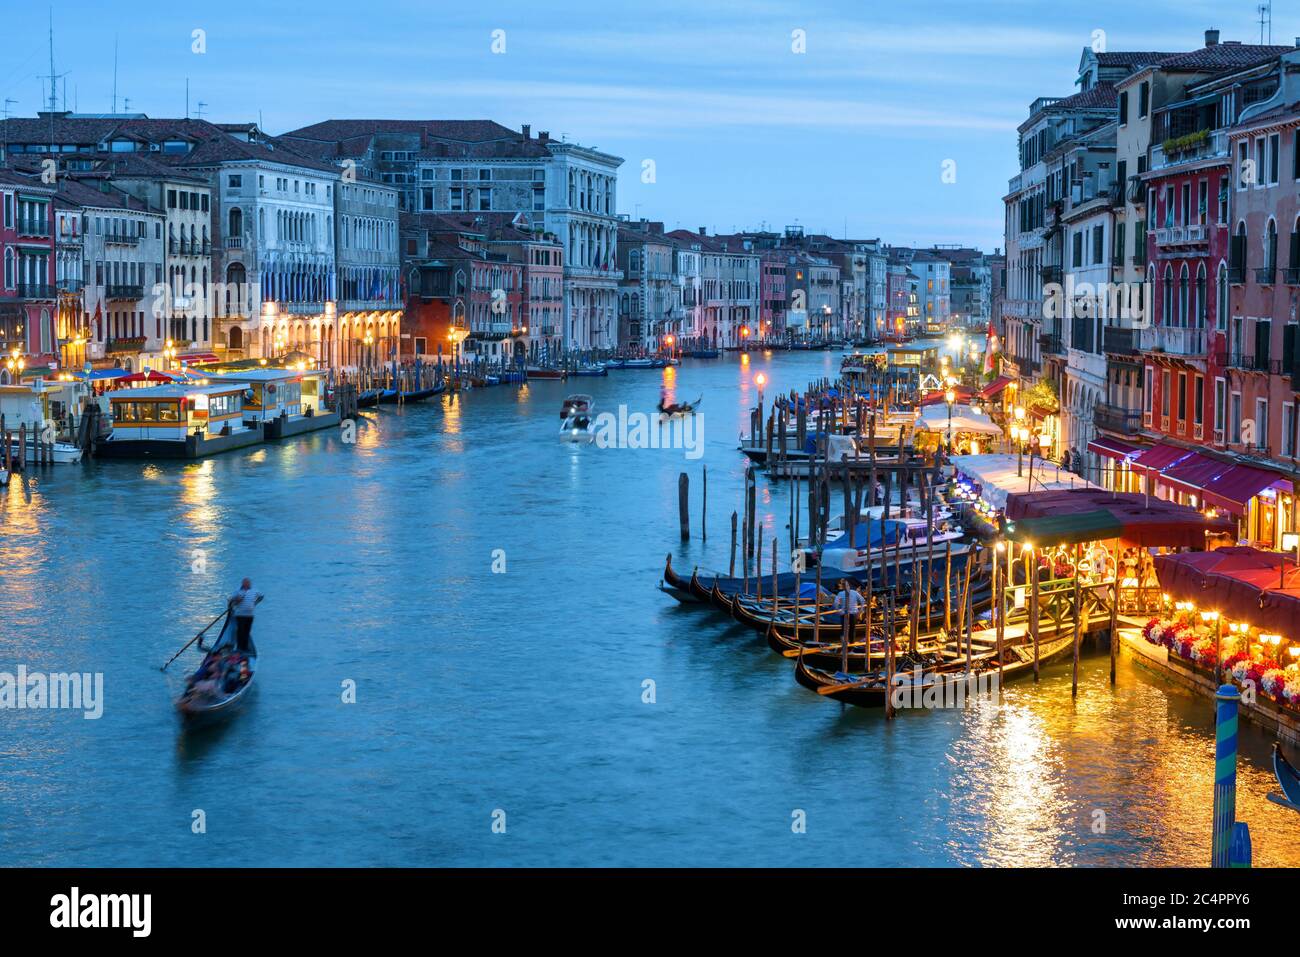 Venedig bei Nacht, Italien. Landschaft des Canale Grande am Abend. Nachtleben in den Wasserfronten von Venedig im Sommer. Romantische Wassertour durch Venedig Stadt bei Stockfoto